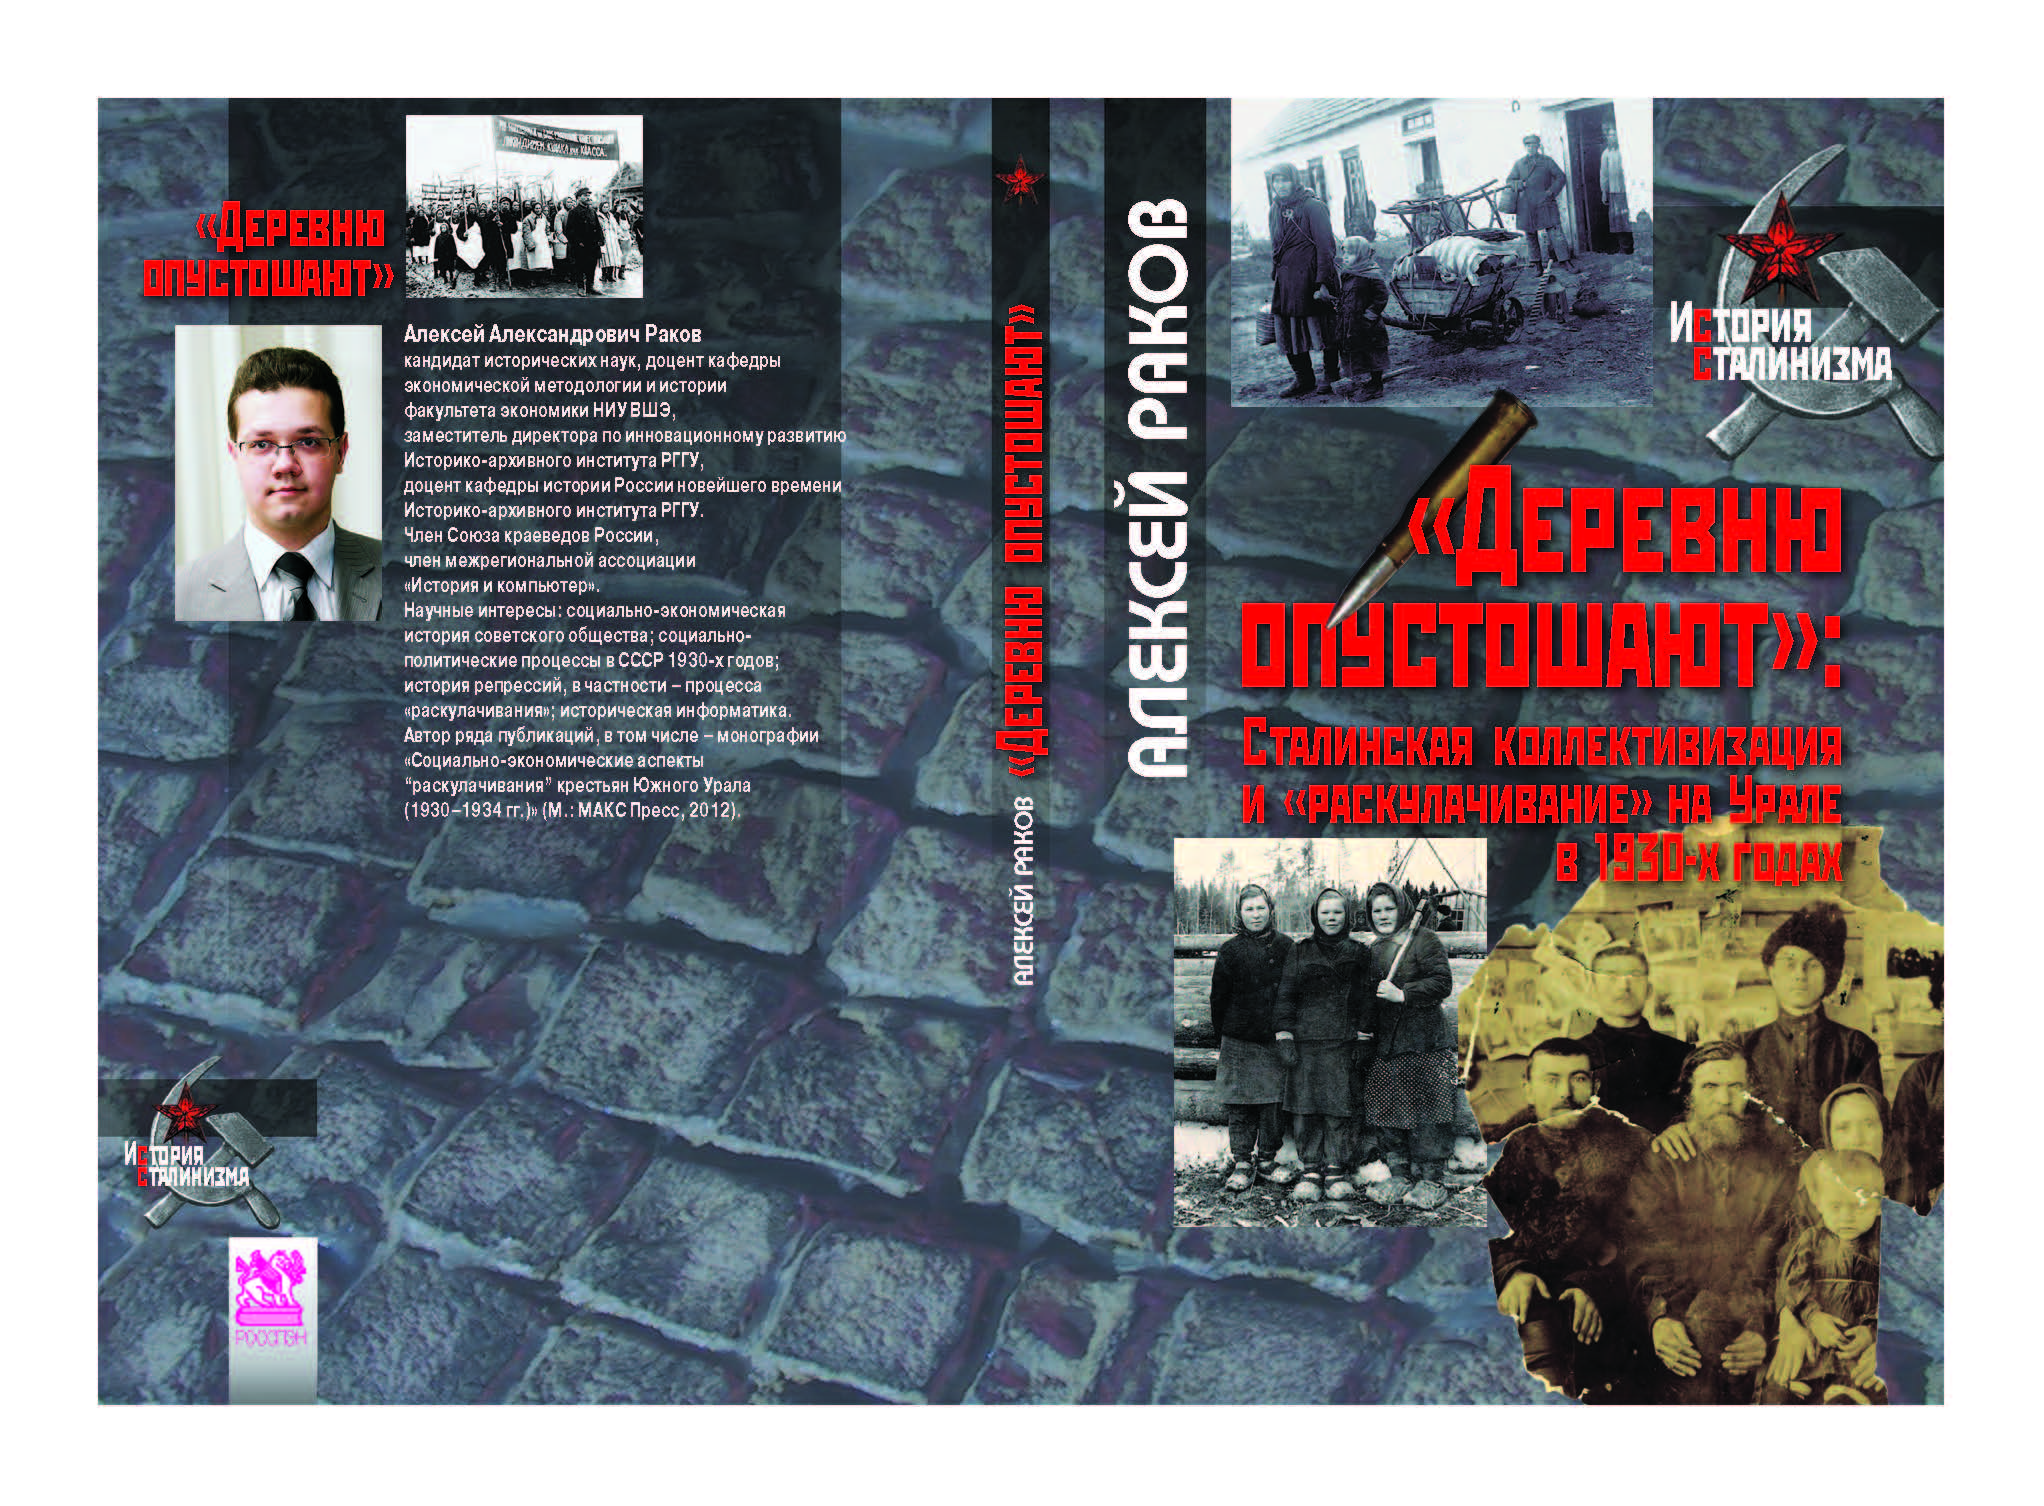 «Деревню опустошают»: сталинская коллективизация и «раскулачивание» на Урале в 1930-х годах